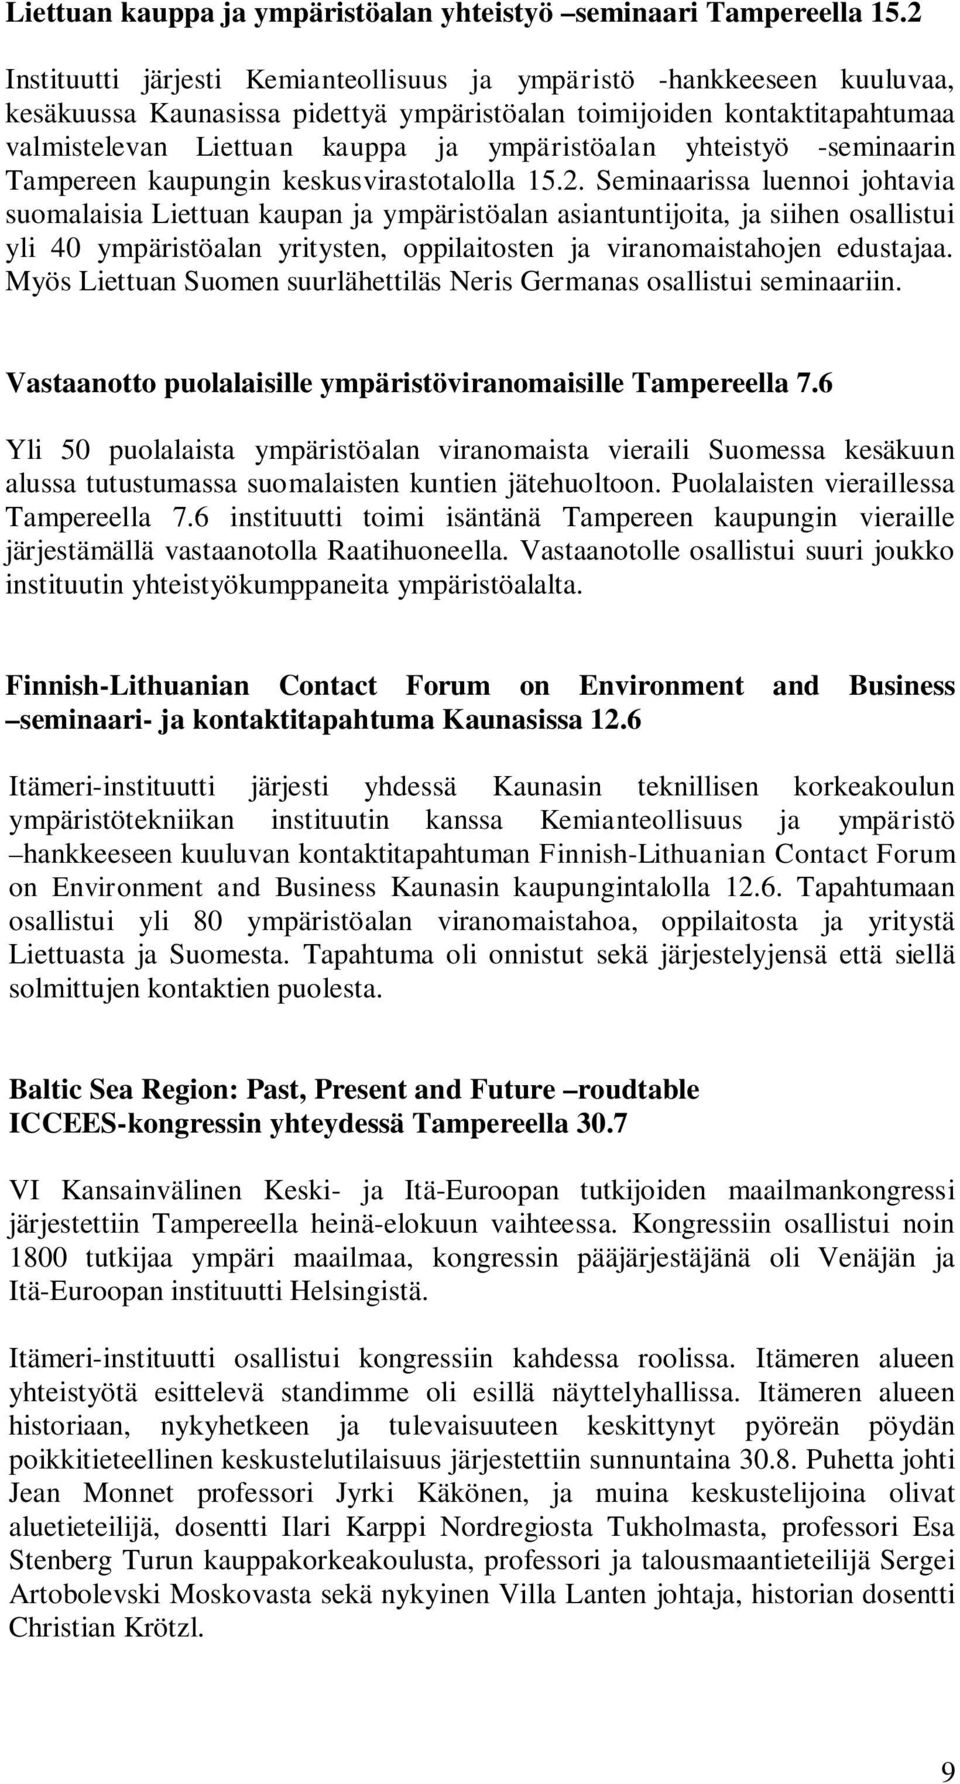 yhteistyö -seminaarin Tampereen kaupungin keskusvirastotalolla 15.2.